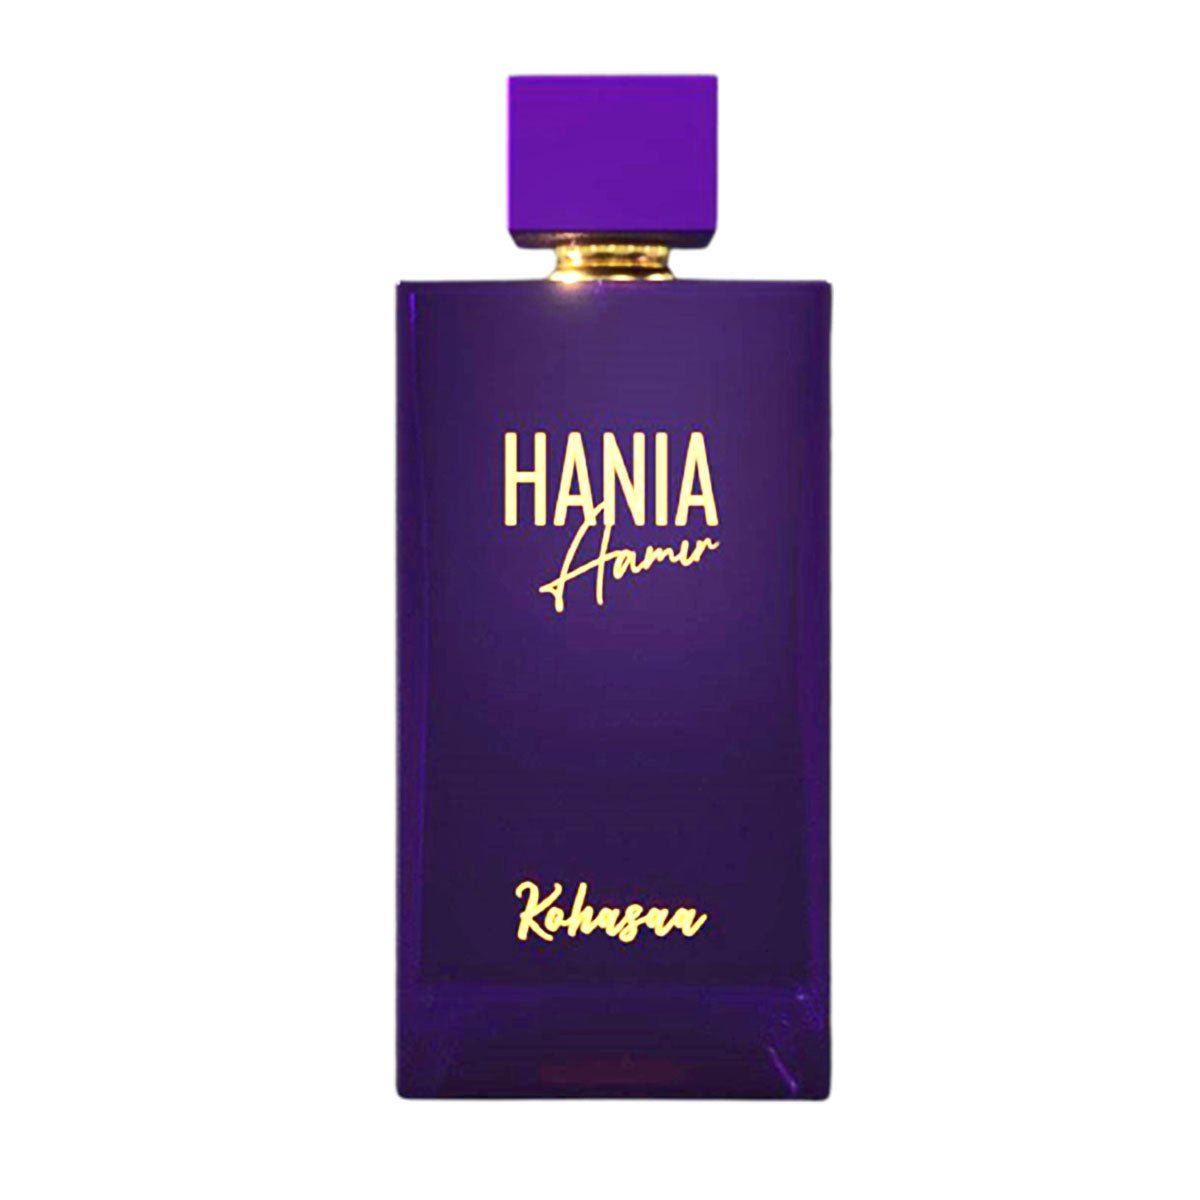 Kohasaa Hania Amir Edp For Women 100 ml-Perfume - AllurebeautypkKohasaa Hania Amir Edp For Women 100 ml-Perfume